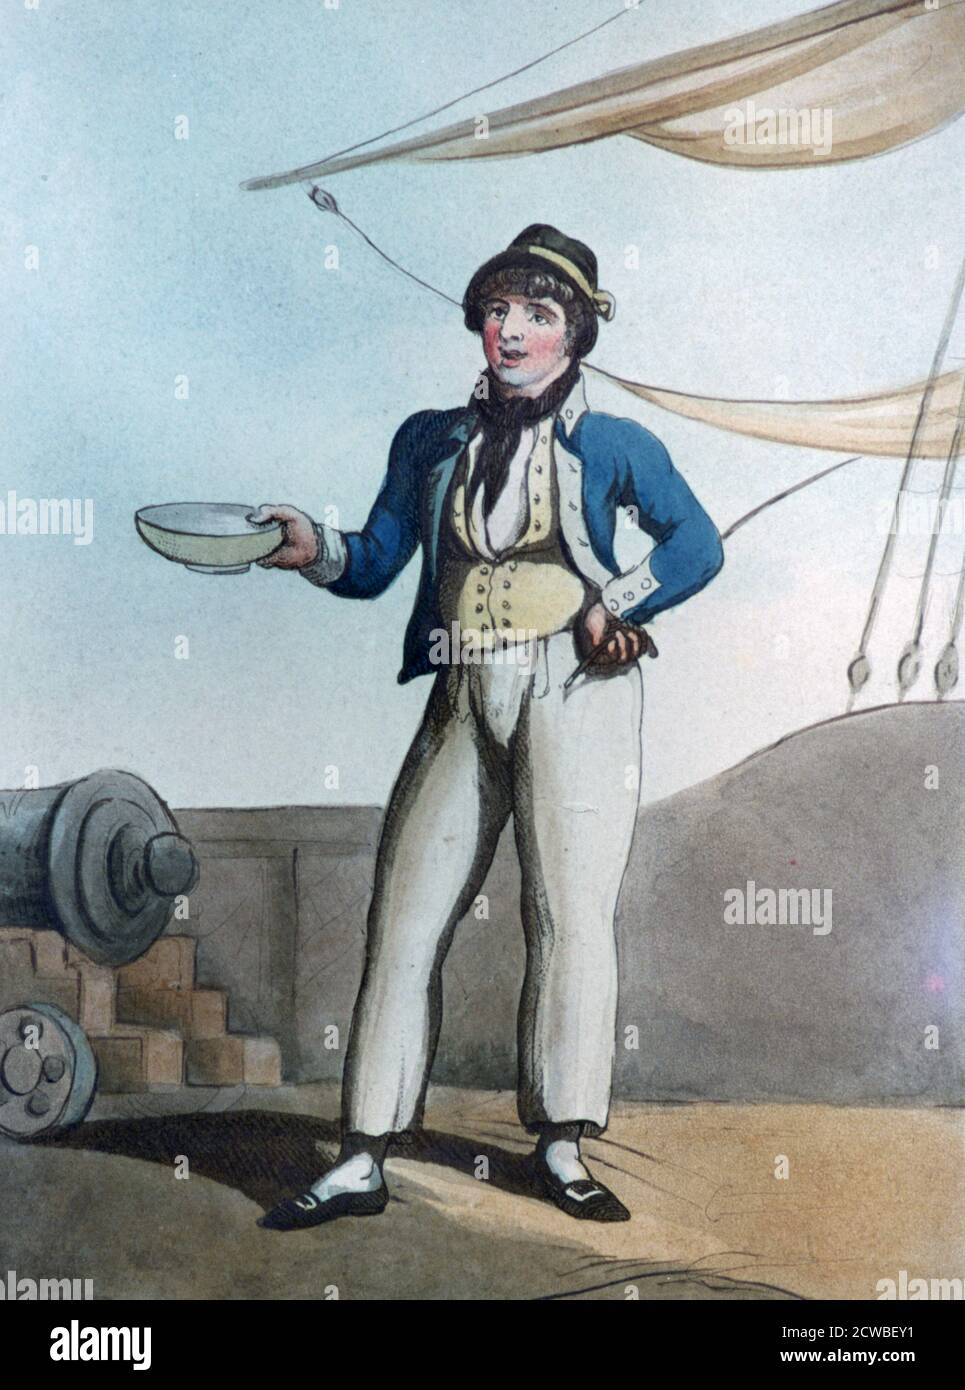 Marinaio', 1799. Artista: Thomas Rowlandson. Thomas Rowlandson (1756-1827) è stato un artista e caricaturista inglese dell'epoca georgiana, noto per la sua satira politica e la sua osservazione sociale. Foto Stock